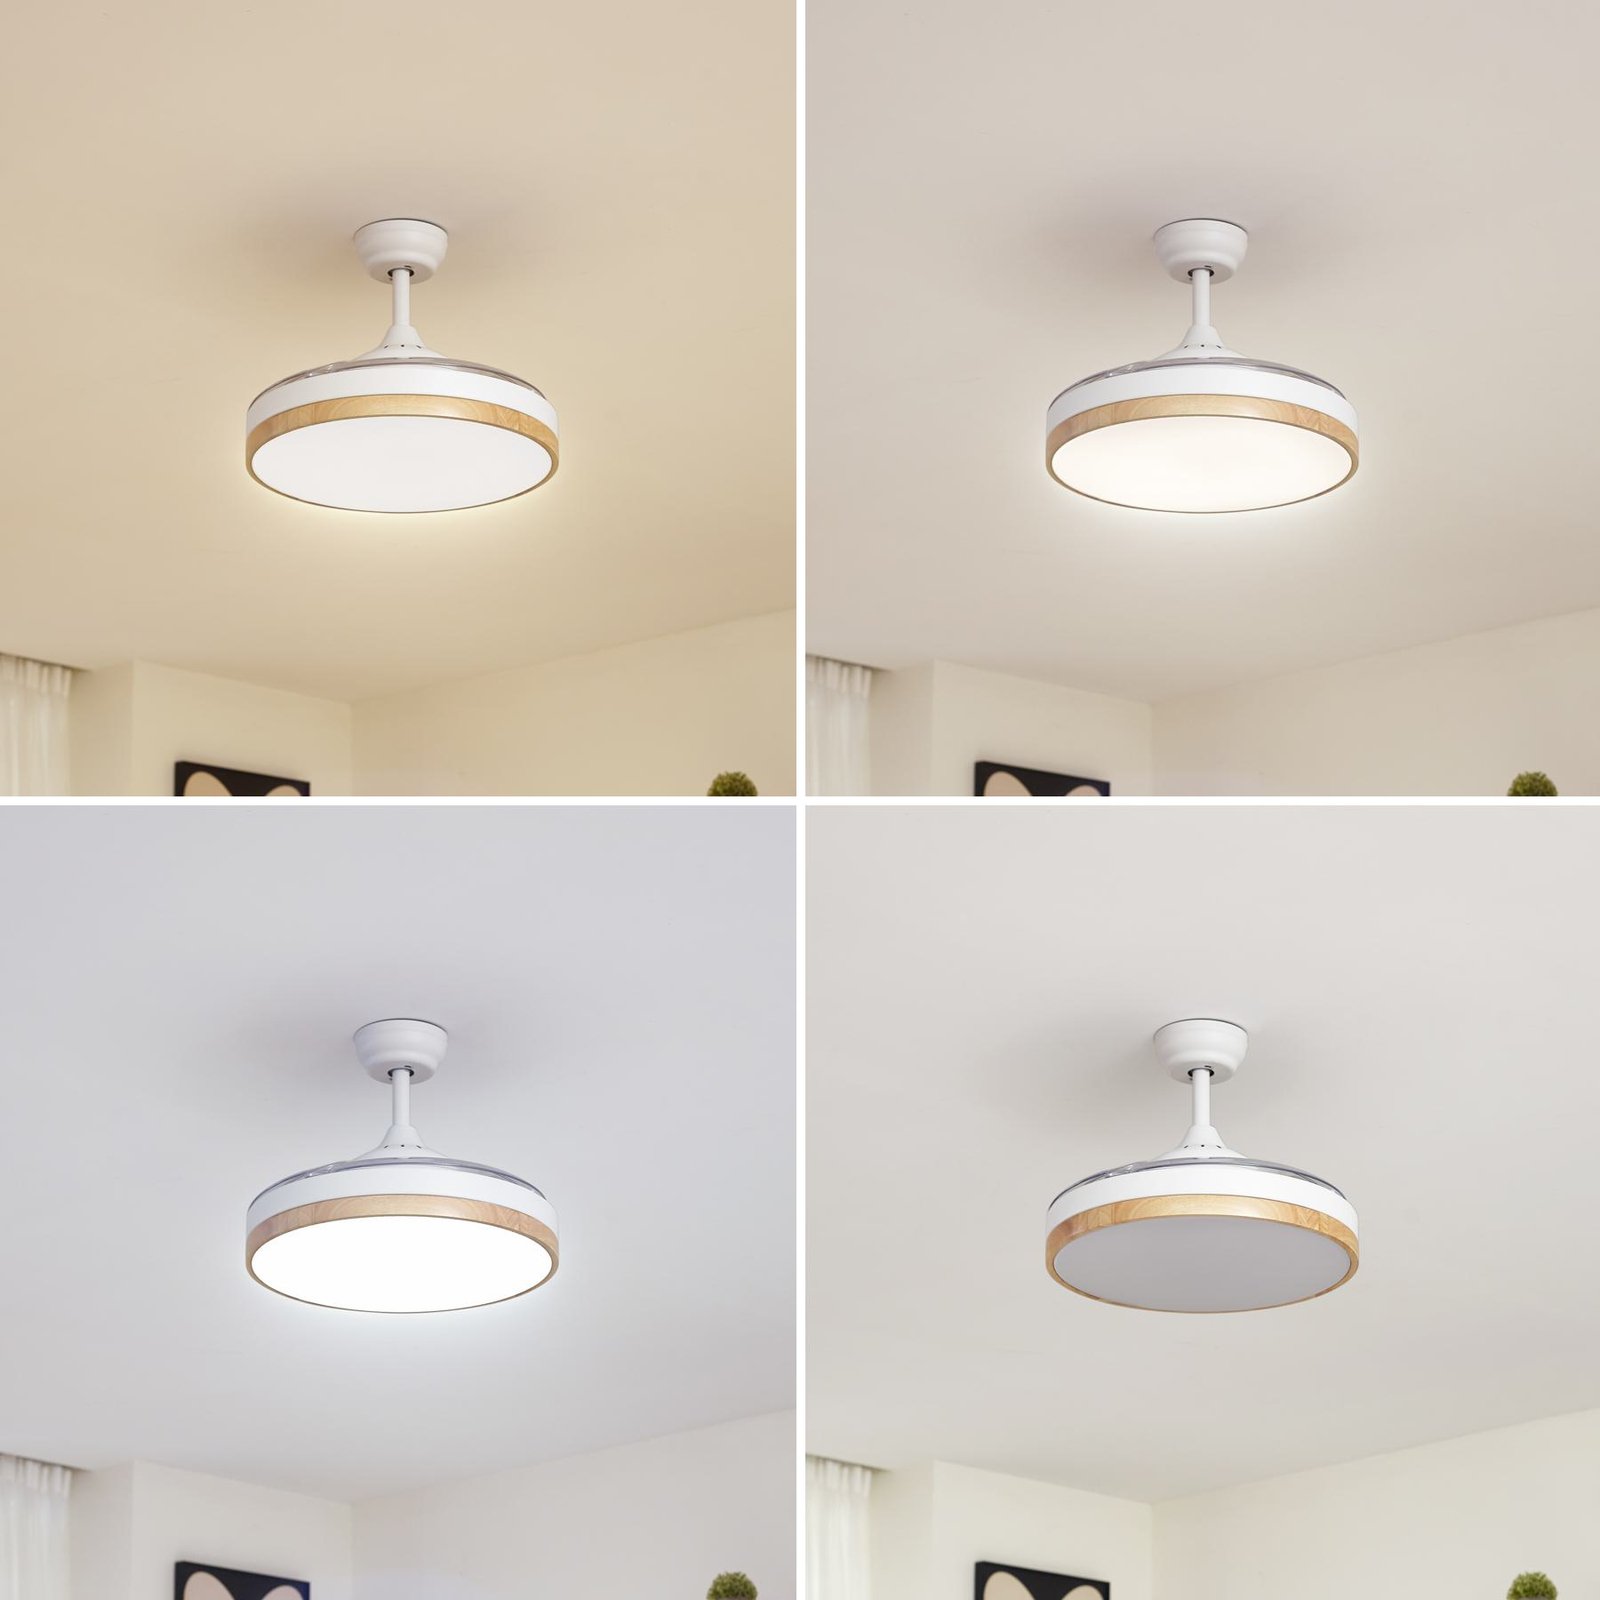 Lindby LED ceiling fan Oras, white, DC, quiet, Ø 107 cm